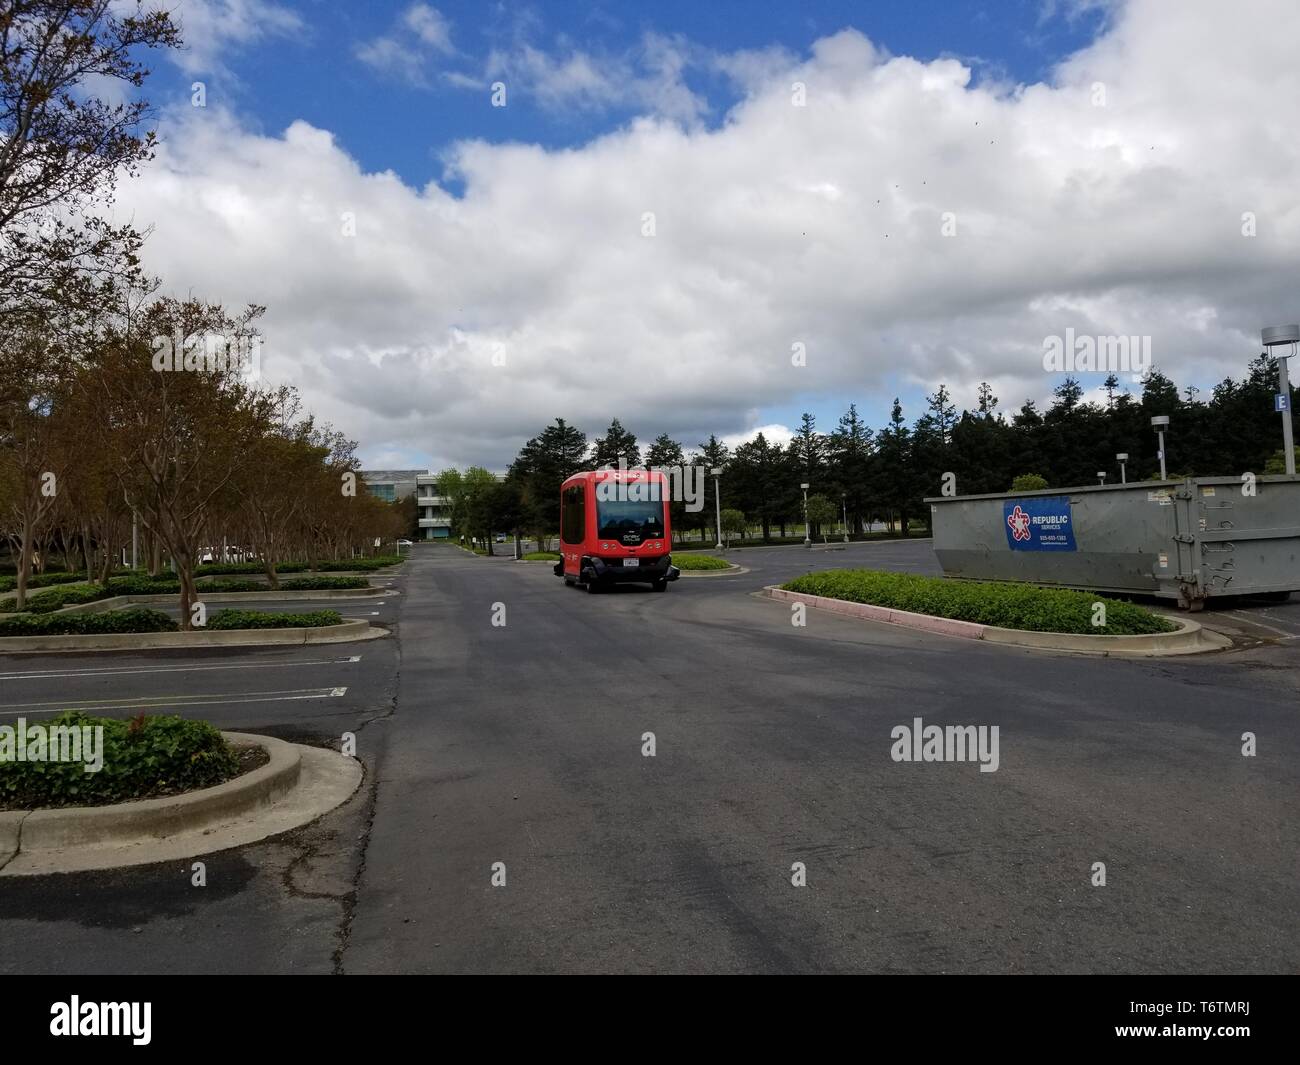 Fahrerlose Shuttle von selbst das Fahrzeug mit dem Unternehmen leicht 1,6 km durch den Bischof Ranch Office Park in San Ramon, Kalifornien, das erste vollständig autonomen Shuttlebus autorisierten auf öffentlichen Straßen im Staat Kalifornien zu fahren, April 16, 2019 fahren. () Stockfoto